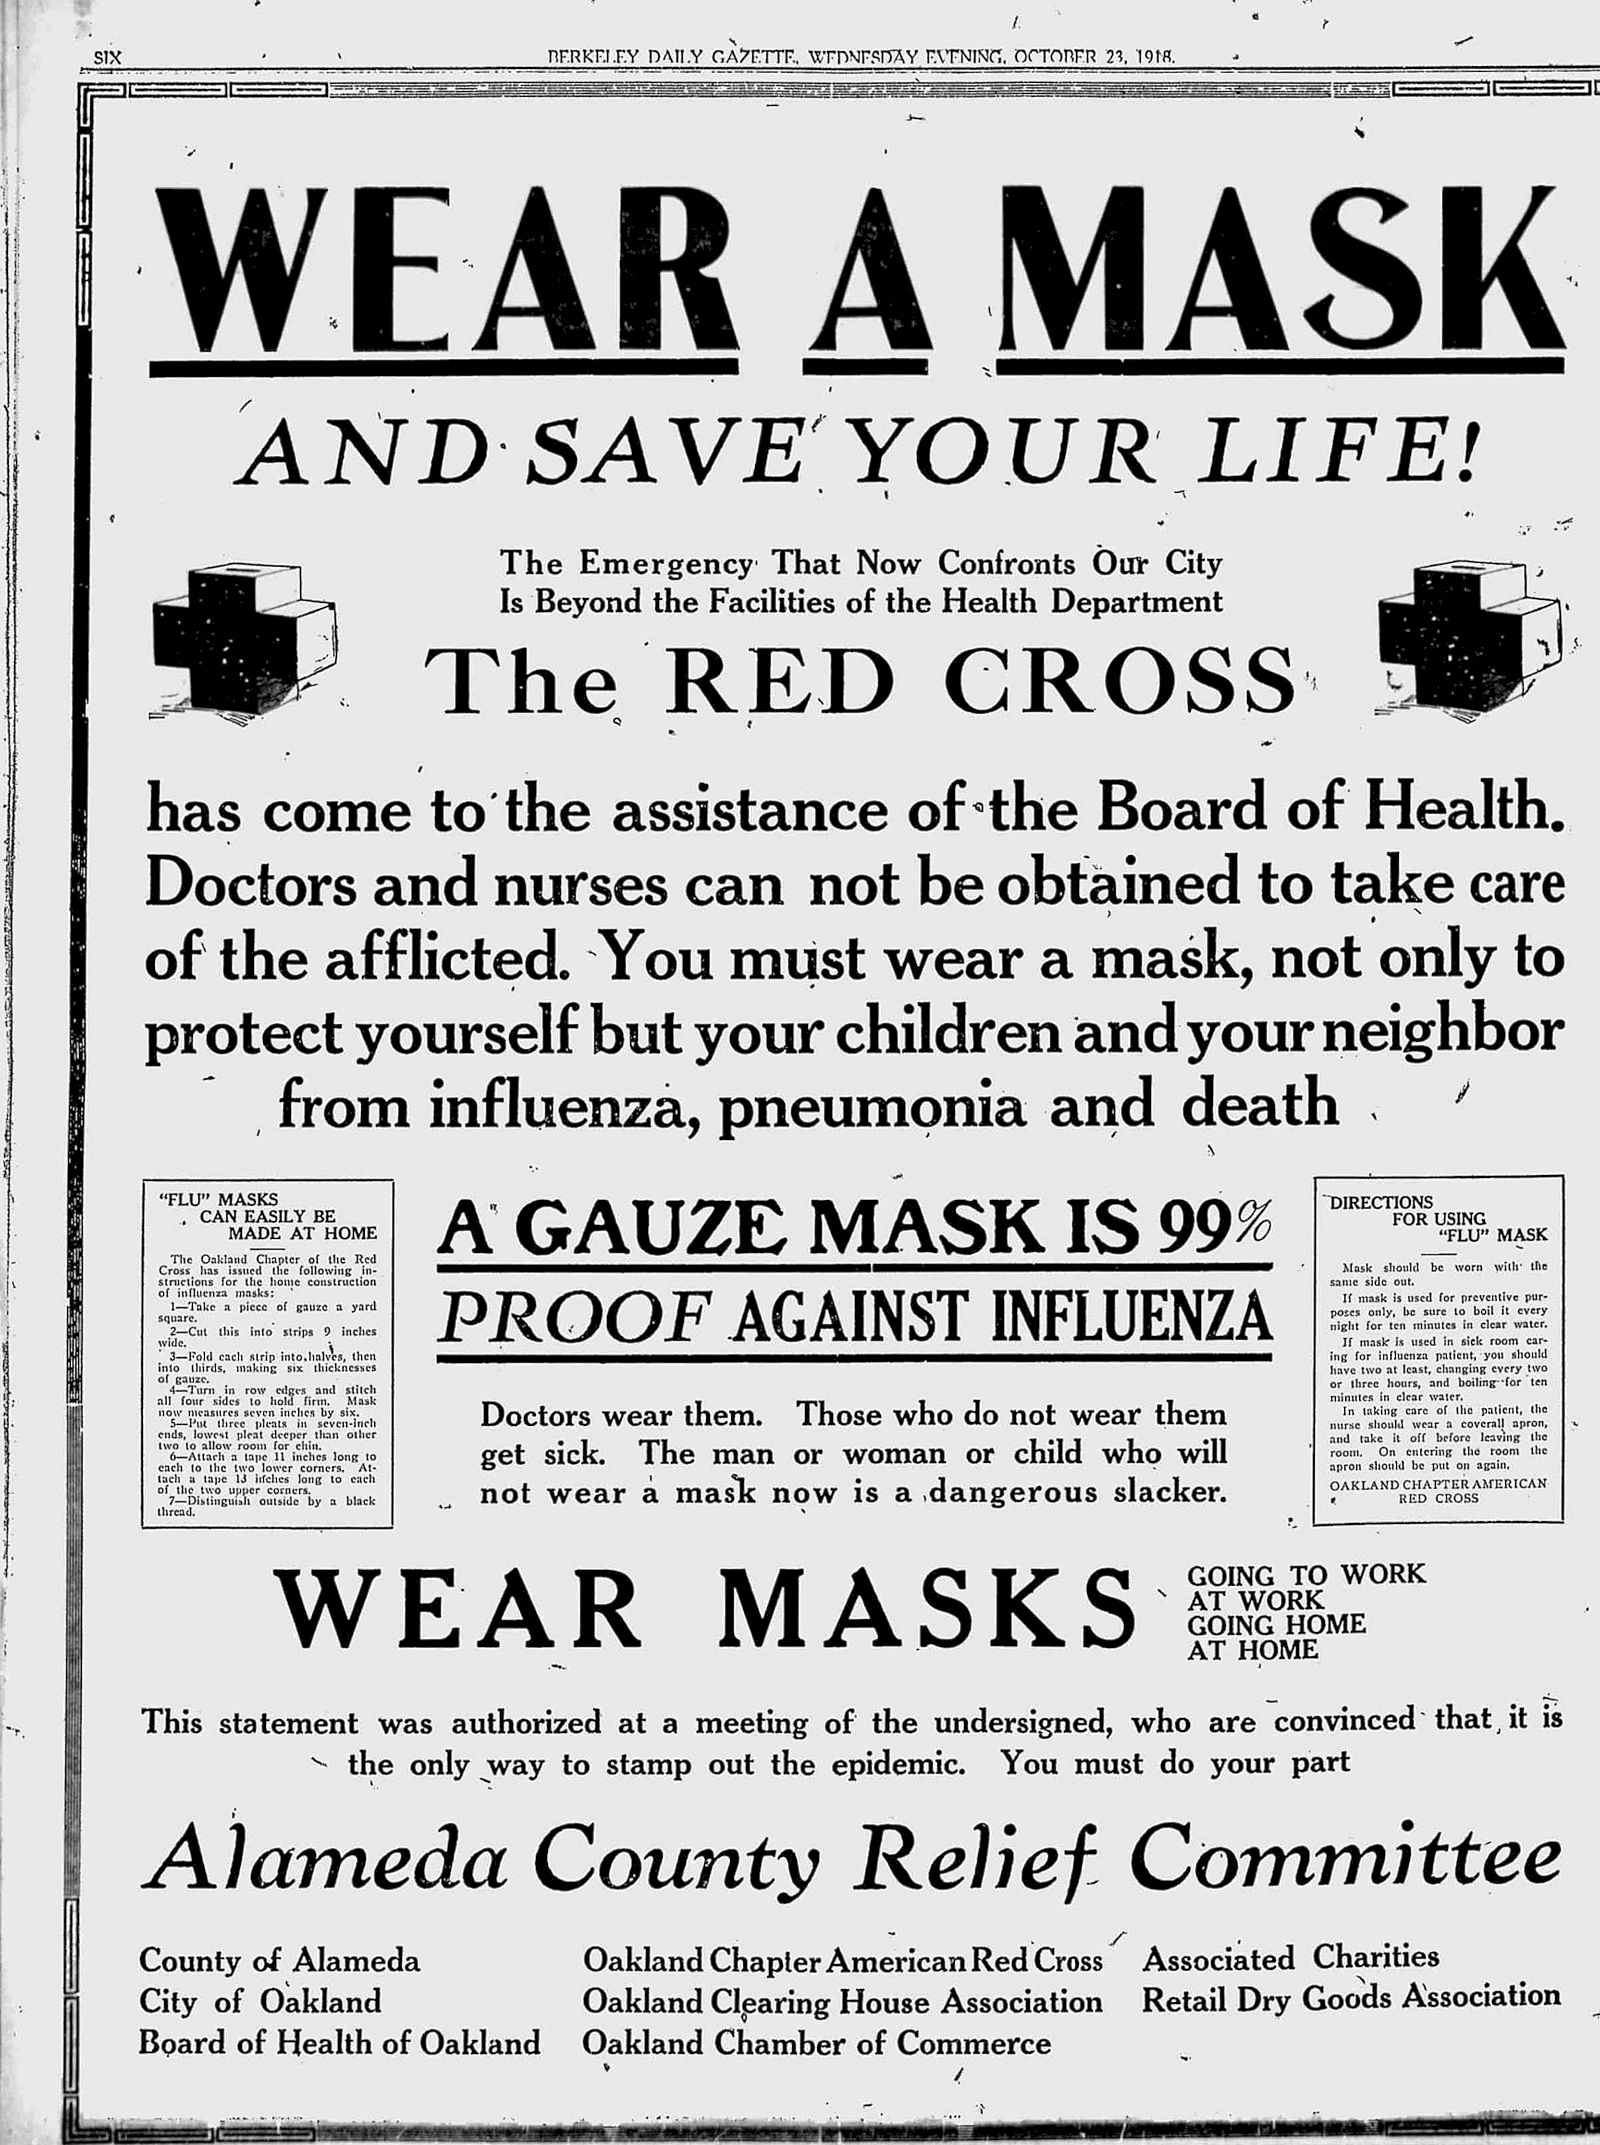 Pravi razlog za potrebo po maski v pandemiji